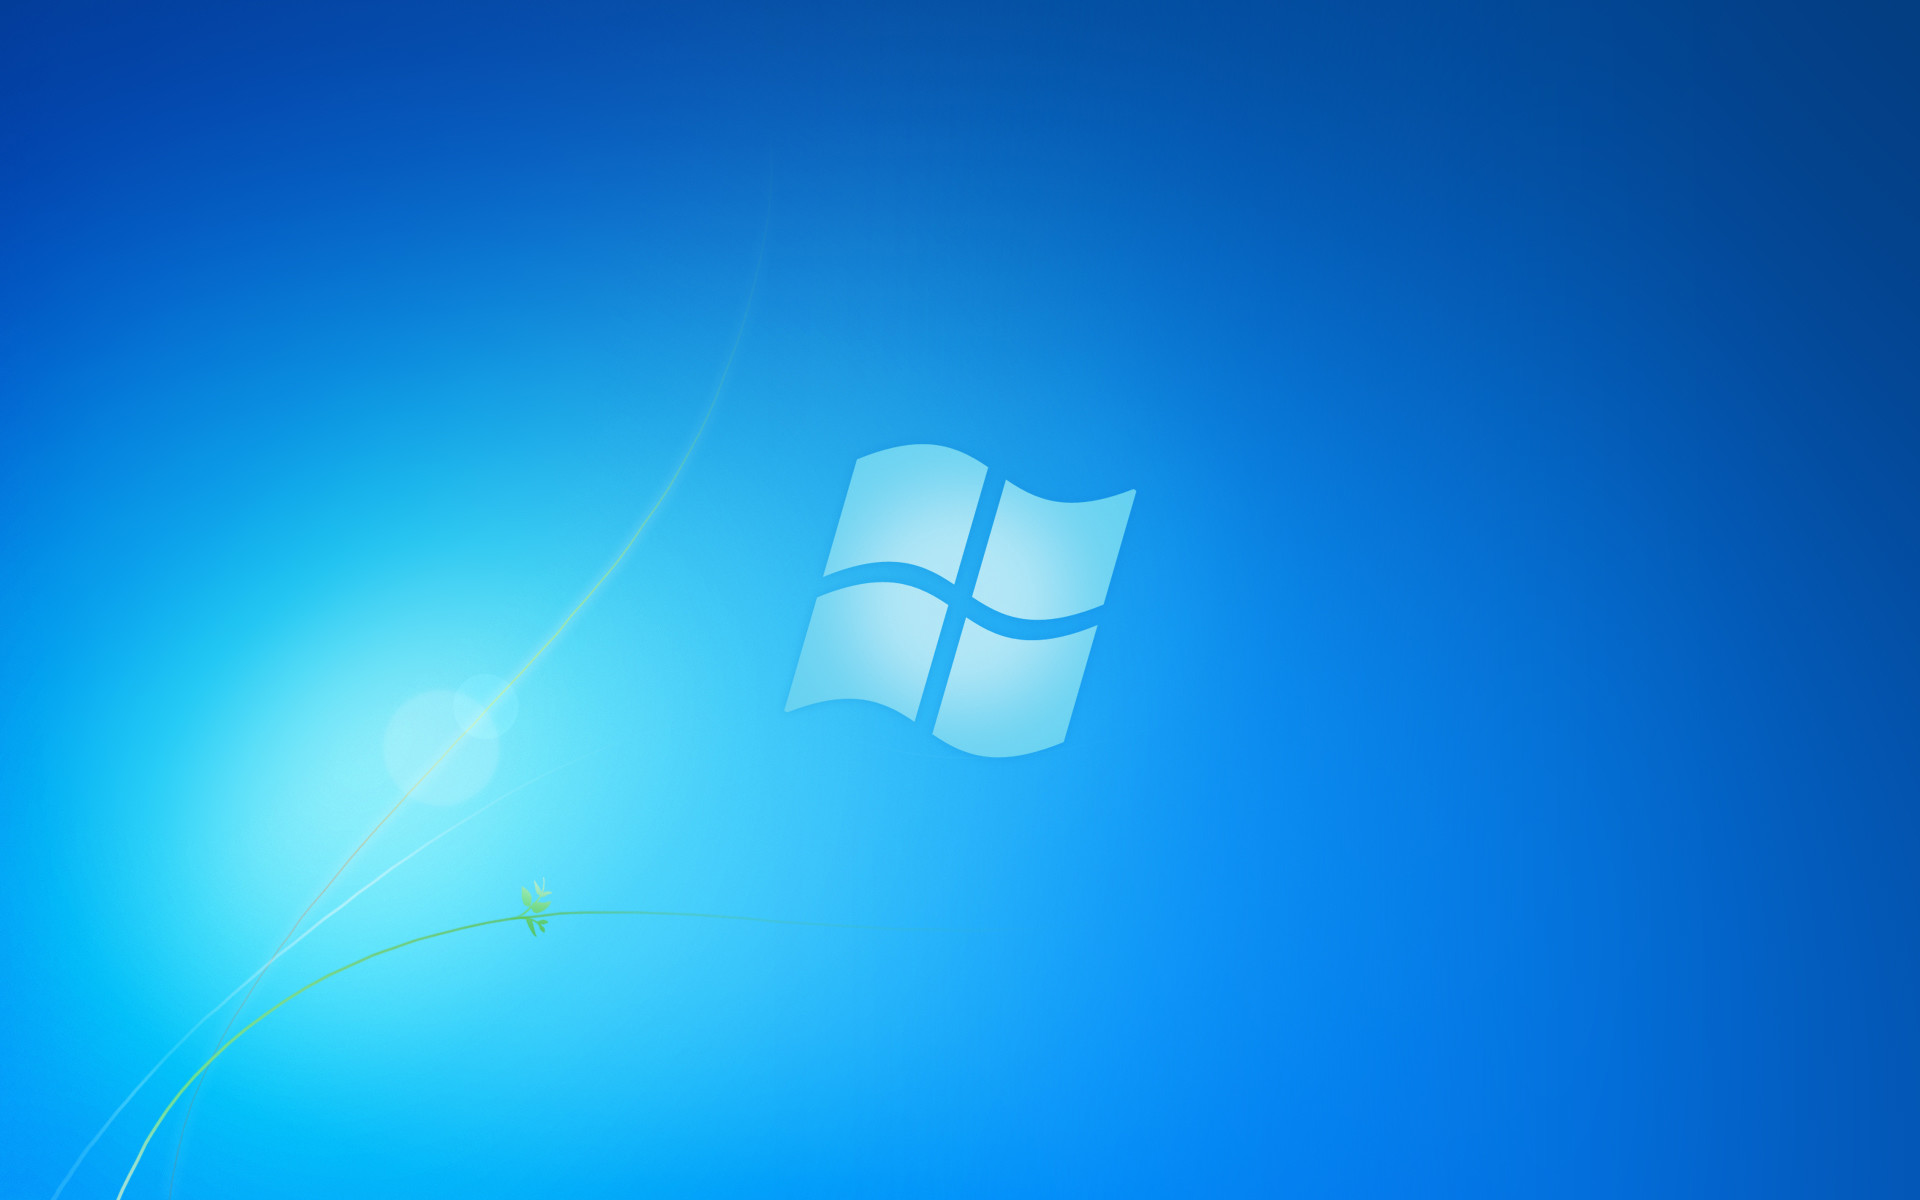 Hình nền Desktop Windows 7 miễn phí sẽ giúp bạn tiết kiệm chi phí nhưng vẫn có được hình nền đẹp trên máy tính. Hãy xem hình ảnh liên quan để tìm kiếm những lựa chọn miễn phí hấp dẫn cho Desktop Windows 7 của bạn.